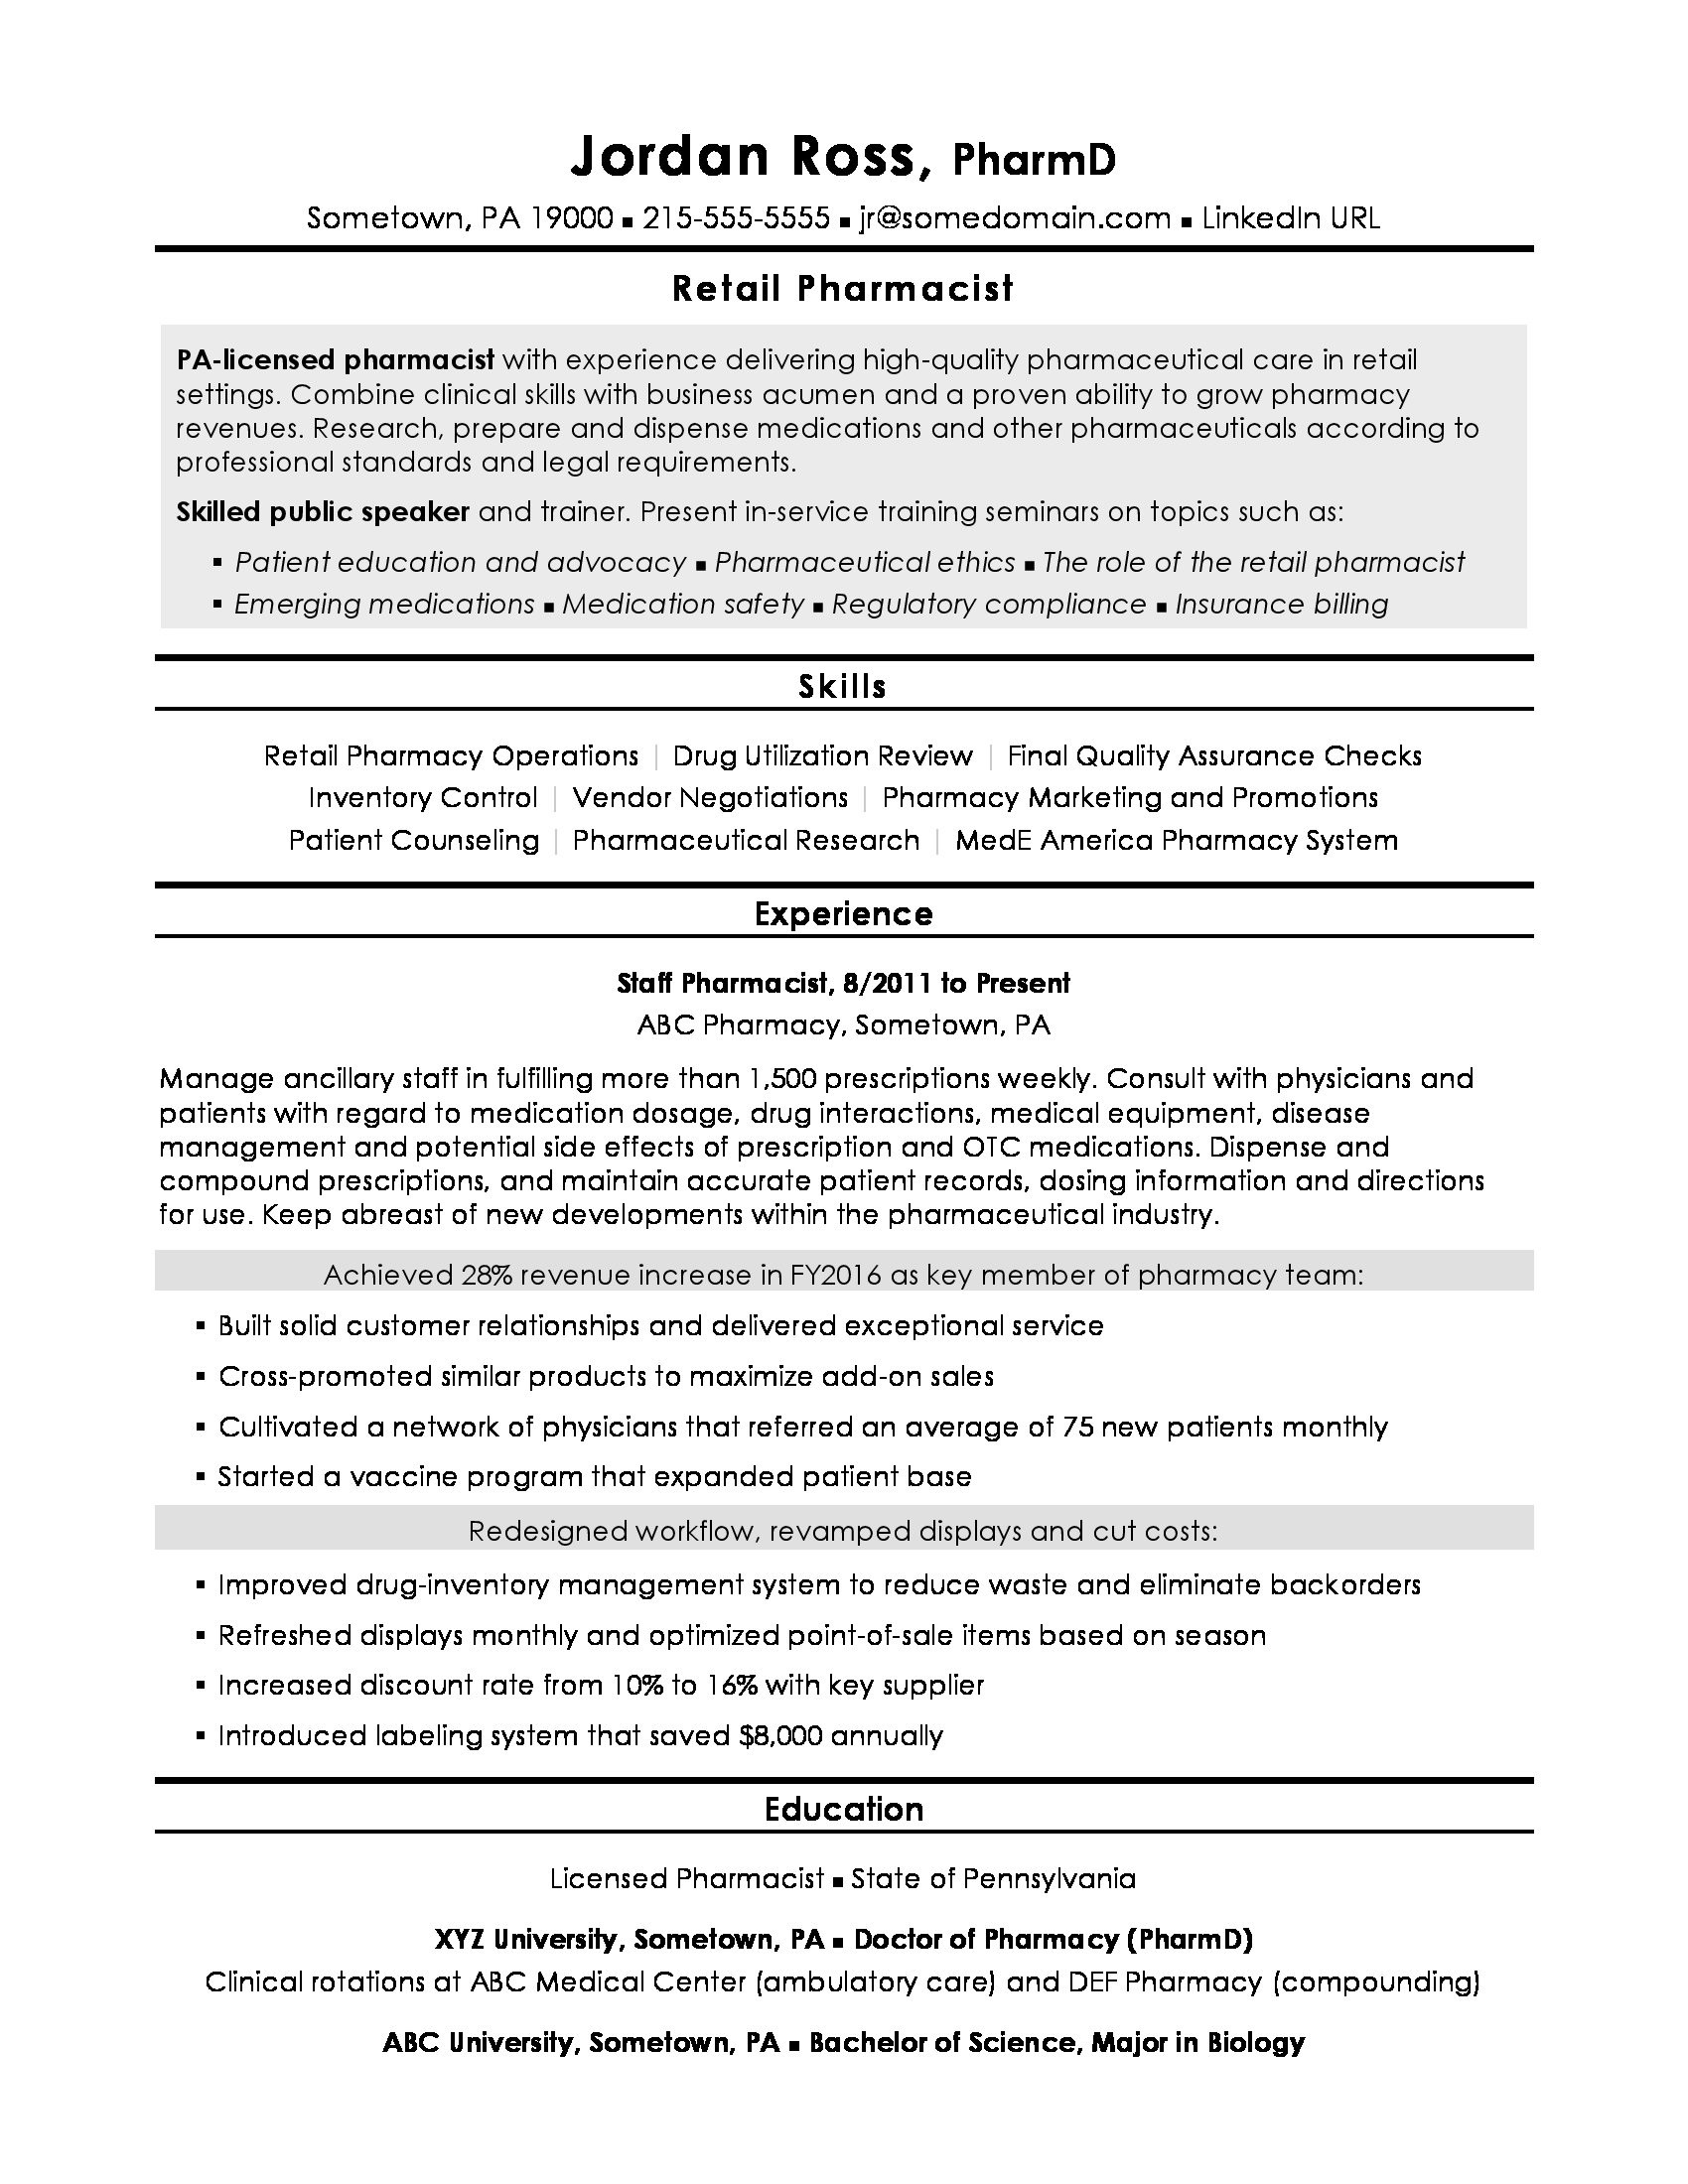 Resume for Being A Pharmacist Samples Sample Pharmacist Resume Monster.com